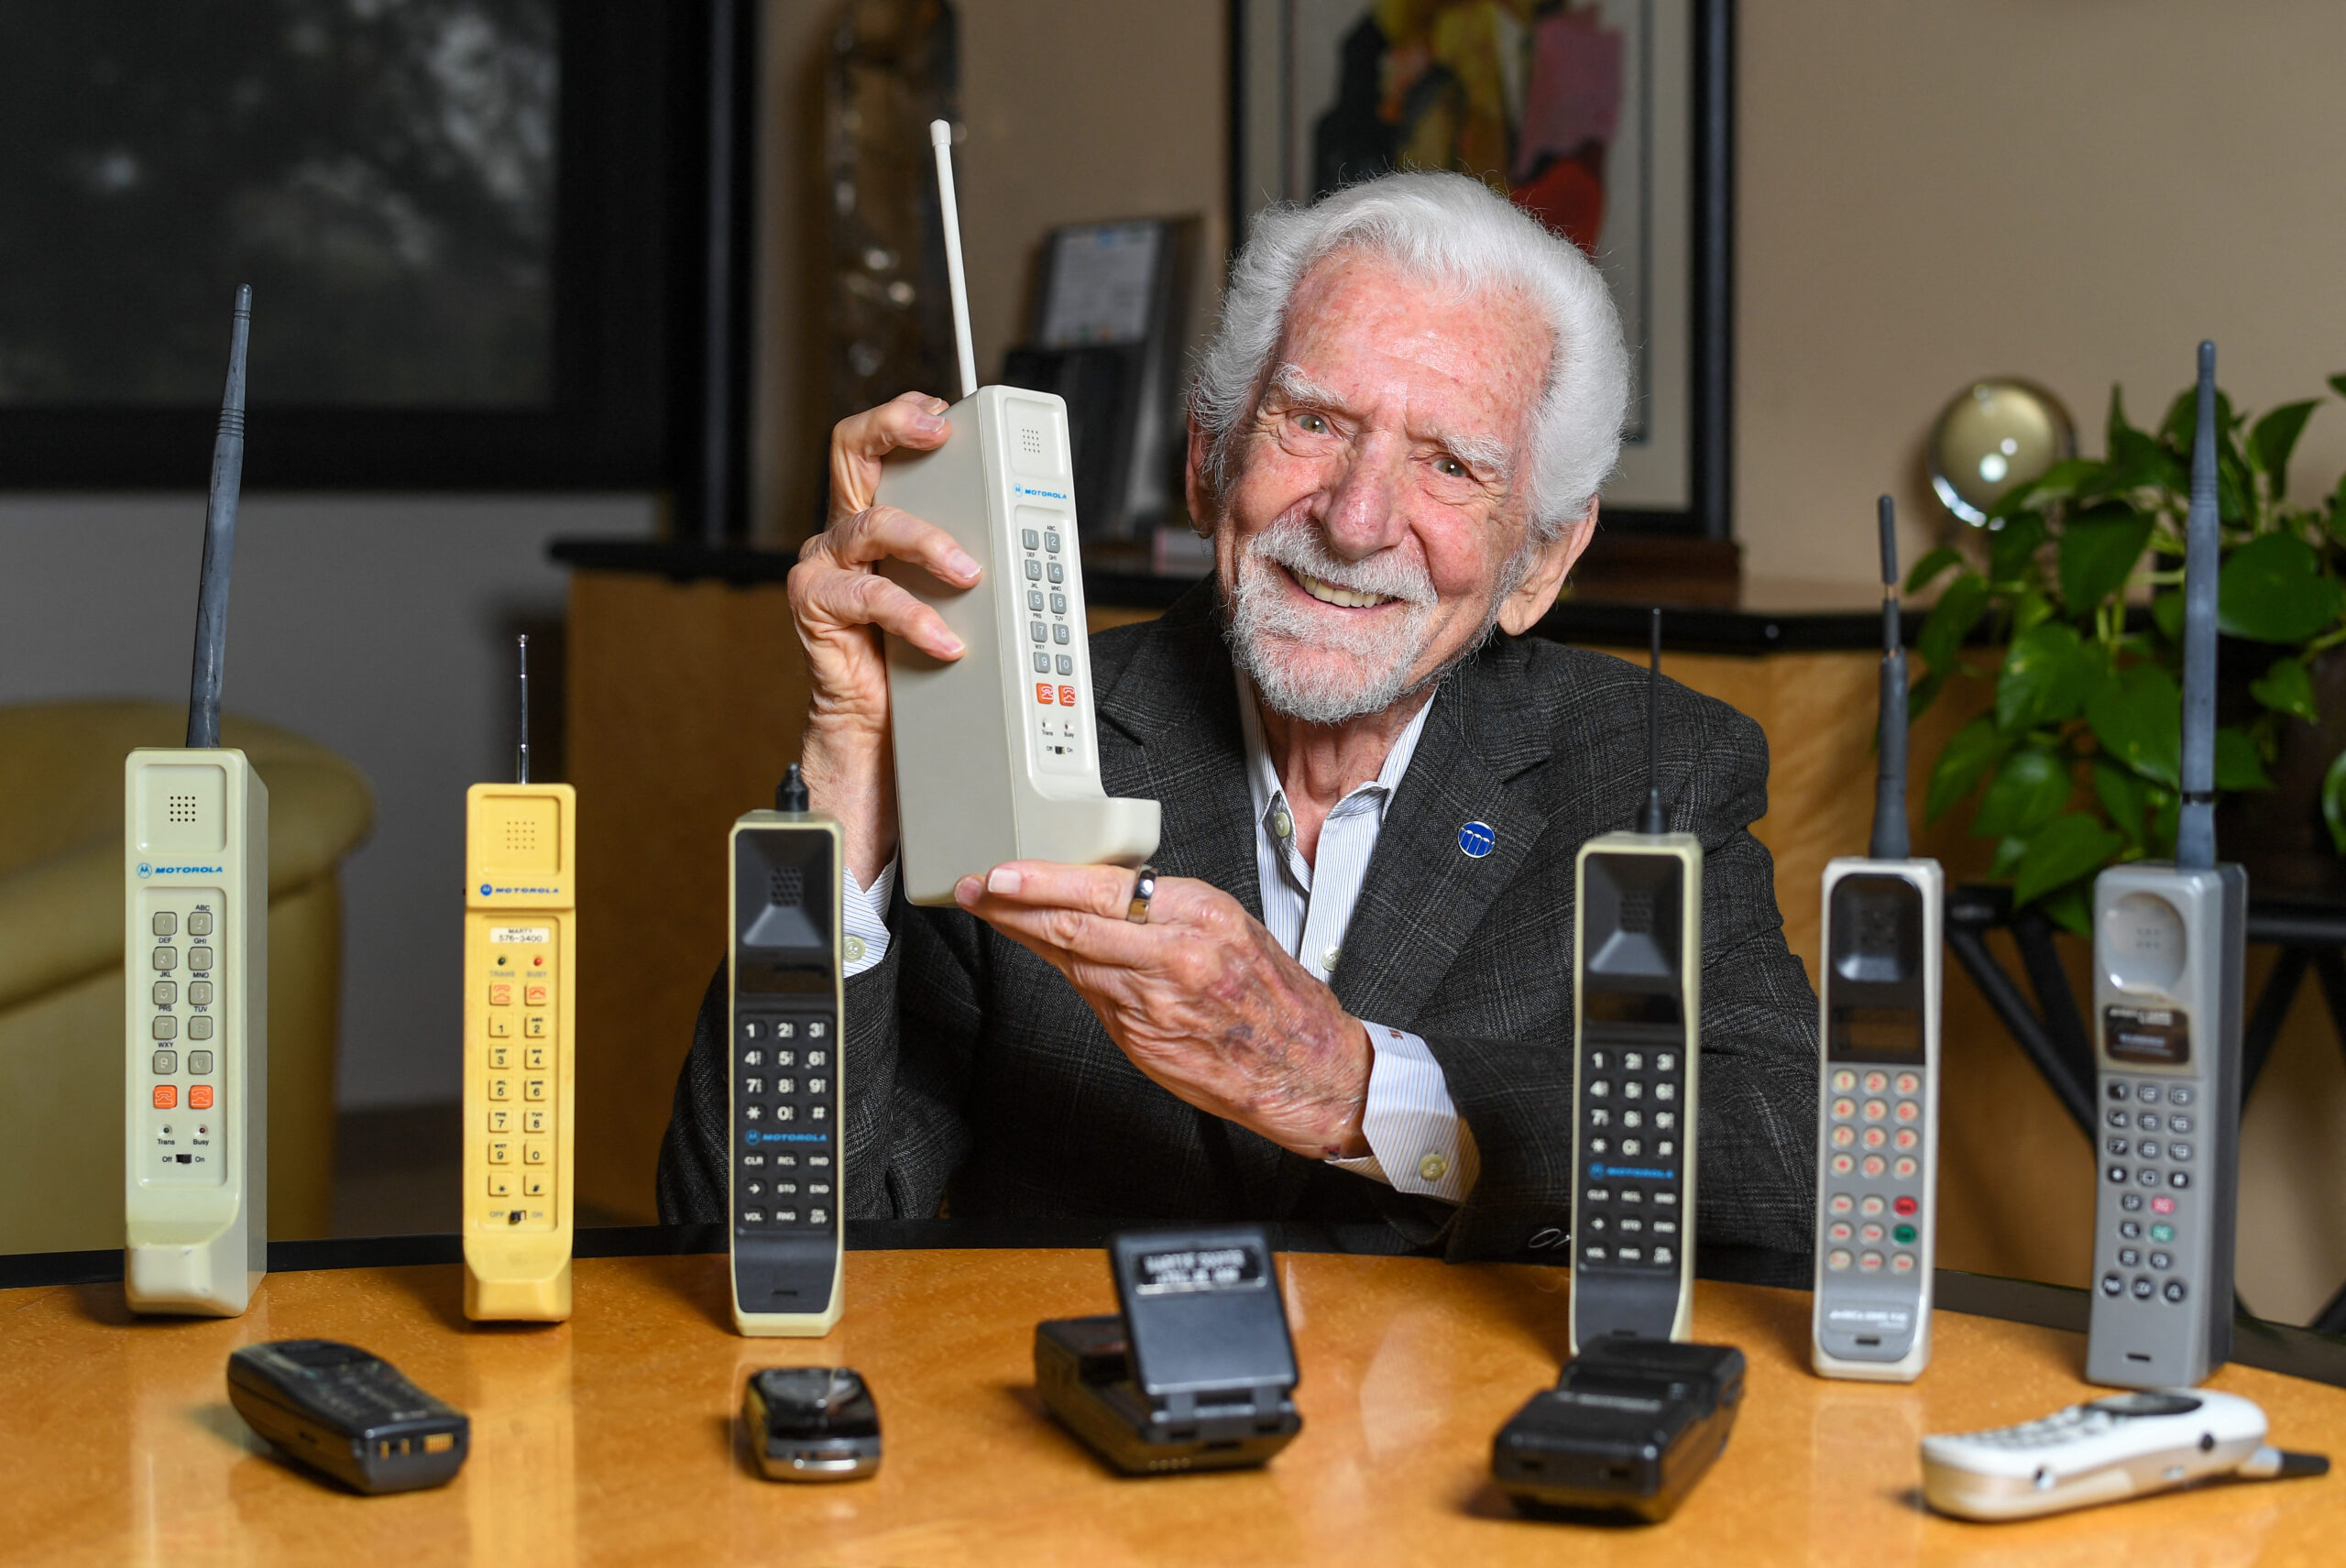 Πριν από 50 χρόνια, ο Μάρτιν Κούπερ έκανε την πρώτη κλήση από κινητό τηλέφωνο